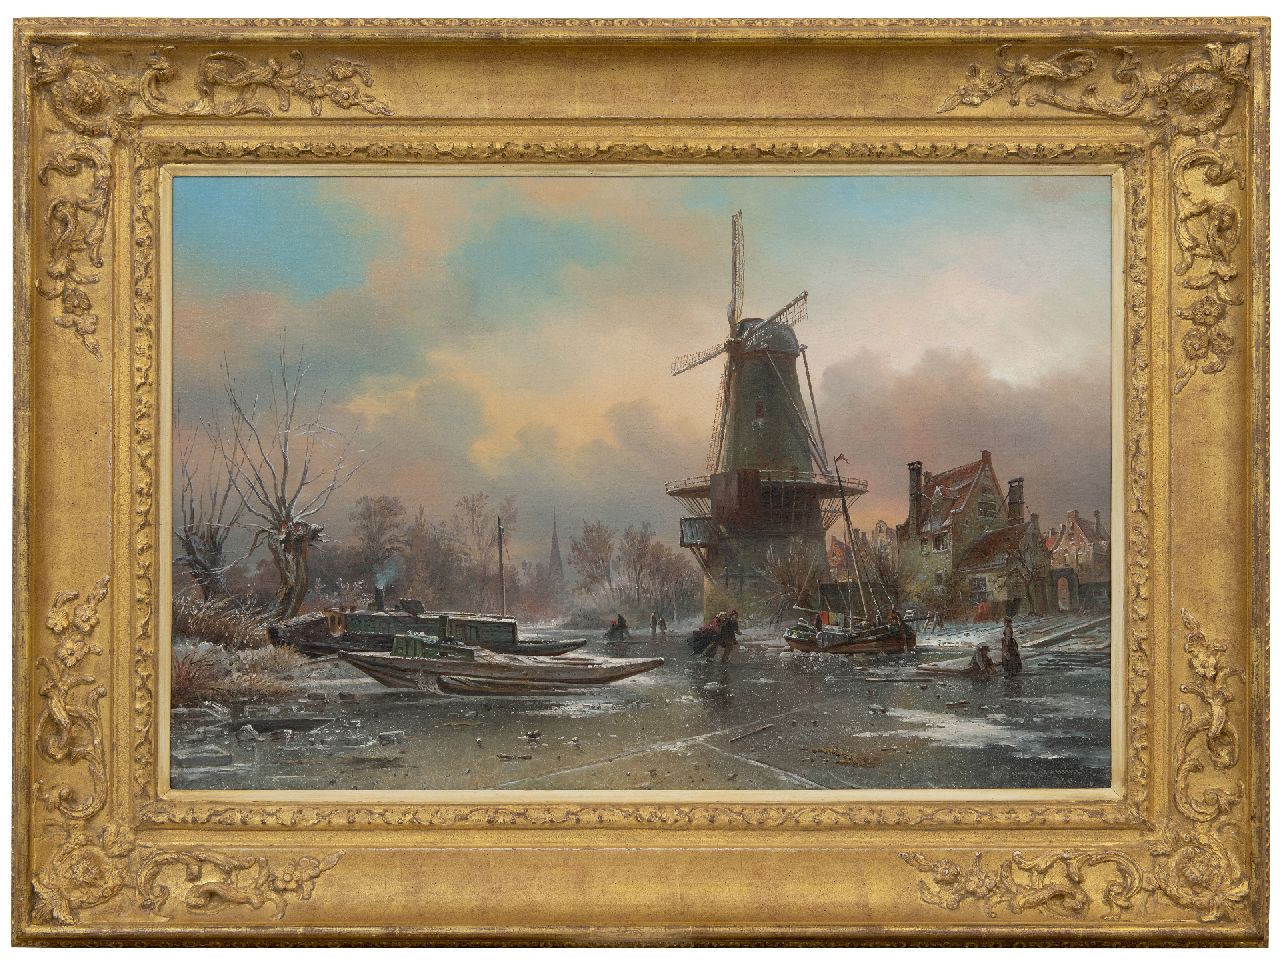 Bommel E.P. van | Elias Pieter van Bommel, Schaatsers op een bevroren dorpsvaart bij een molen, olieverf op doek 50,1 x 76,1 cm, gesigneerd rechtsonder en gedateerd 1870